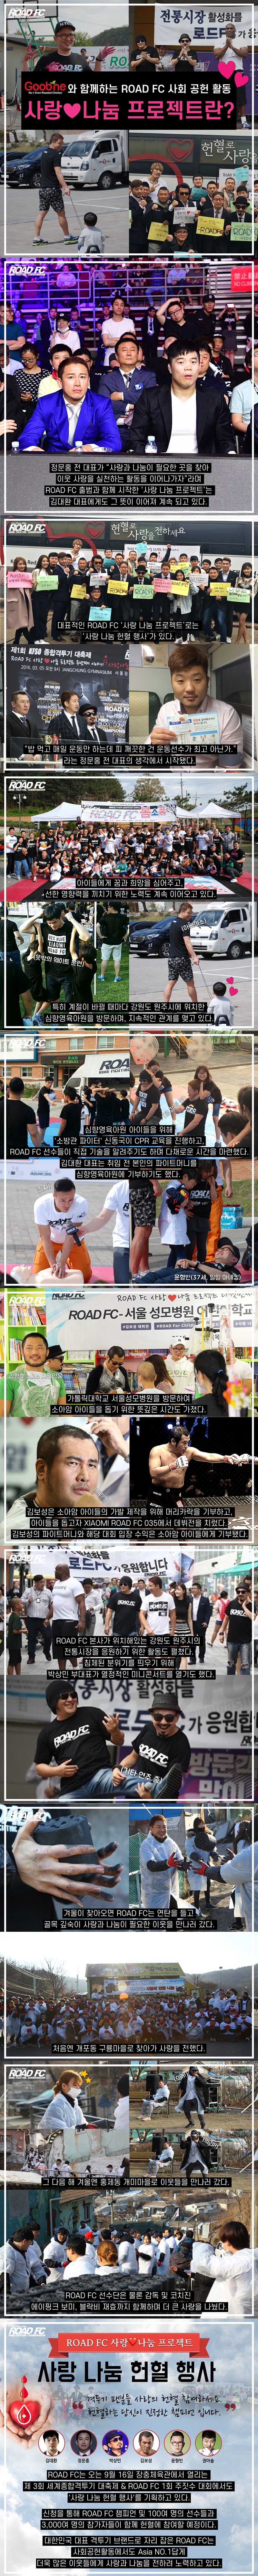 ‘Asia NO.1' ROAD FC 사회 공헌 활동 ‘사랑나눔 프로젝트’란? (로드fc)